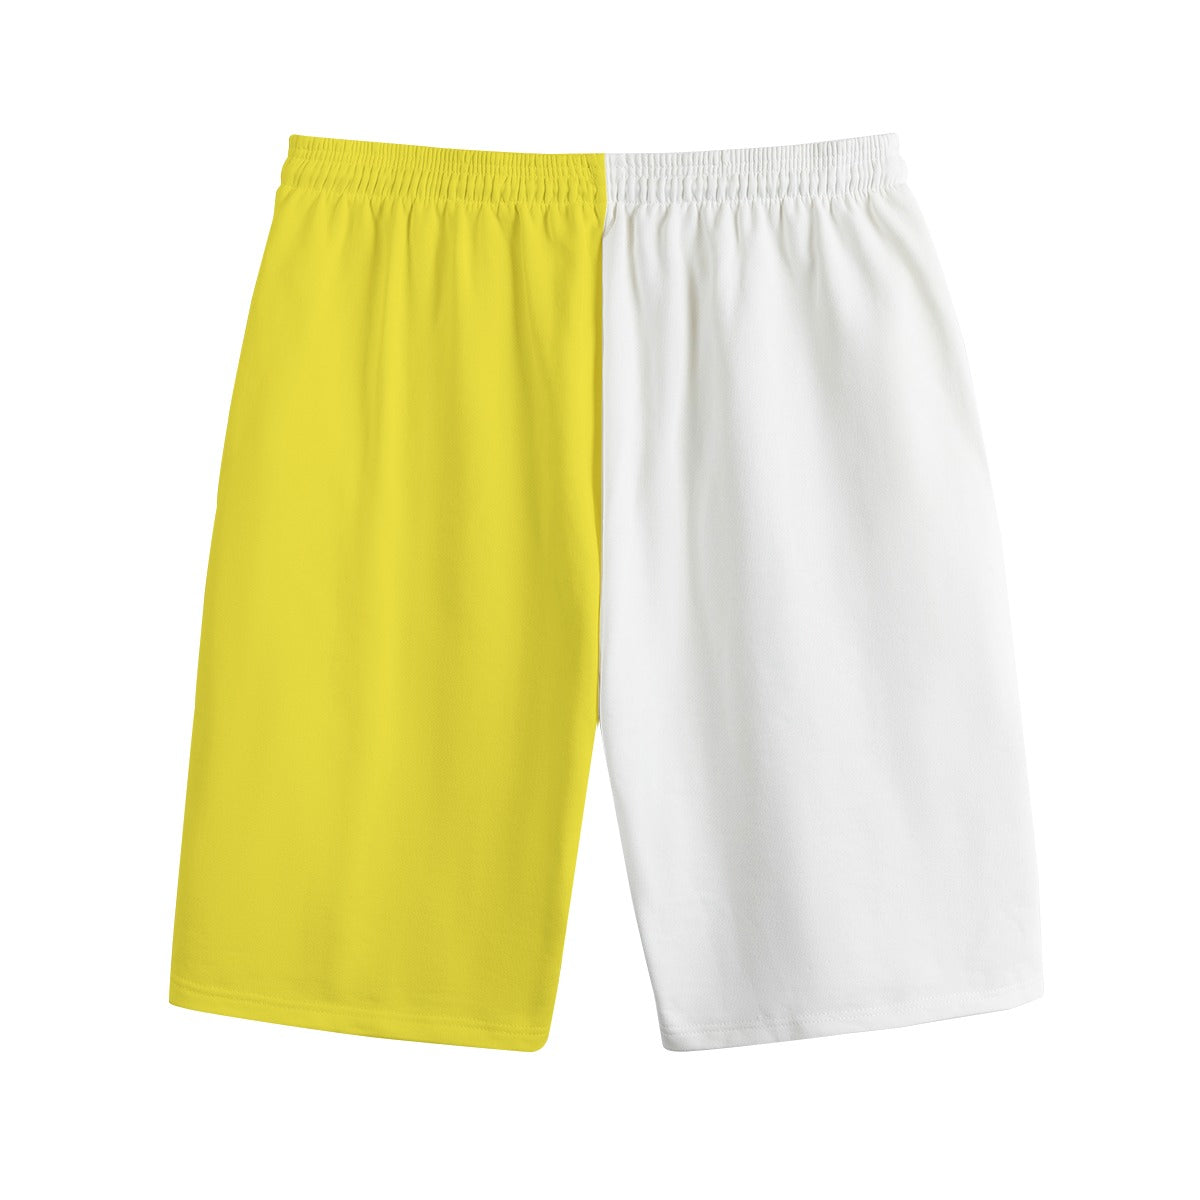 AM&IS Yellow Color Block Men's Shorts | 100% Cotton